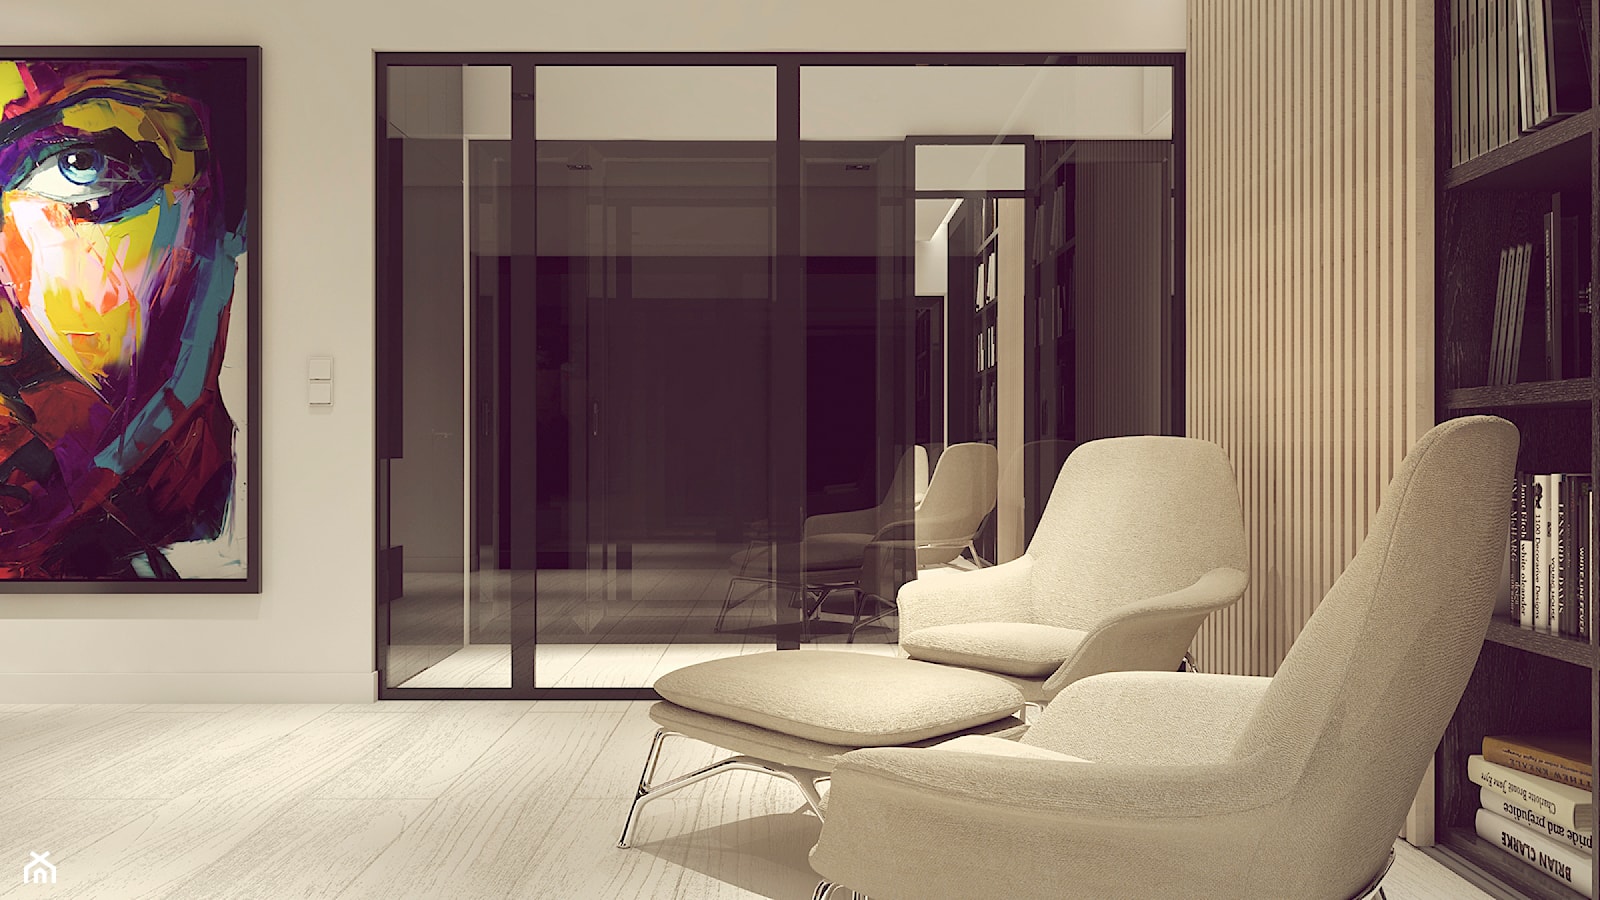 POP ART HOUSE - Salon, styl minimalistyczny - zdjęcie od CUDO STUDIO - Homebook